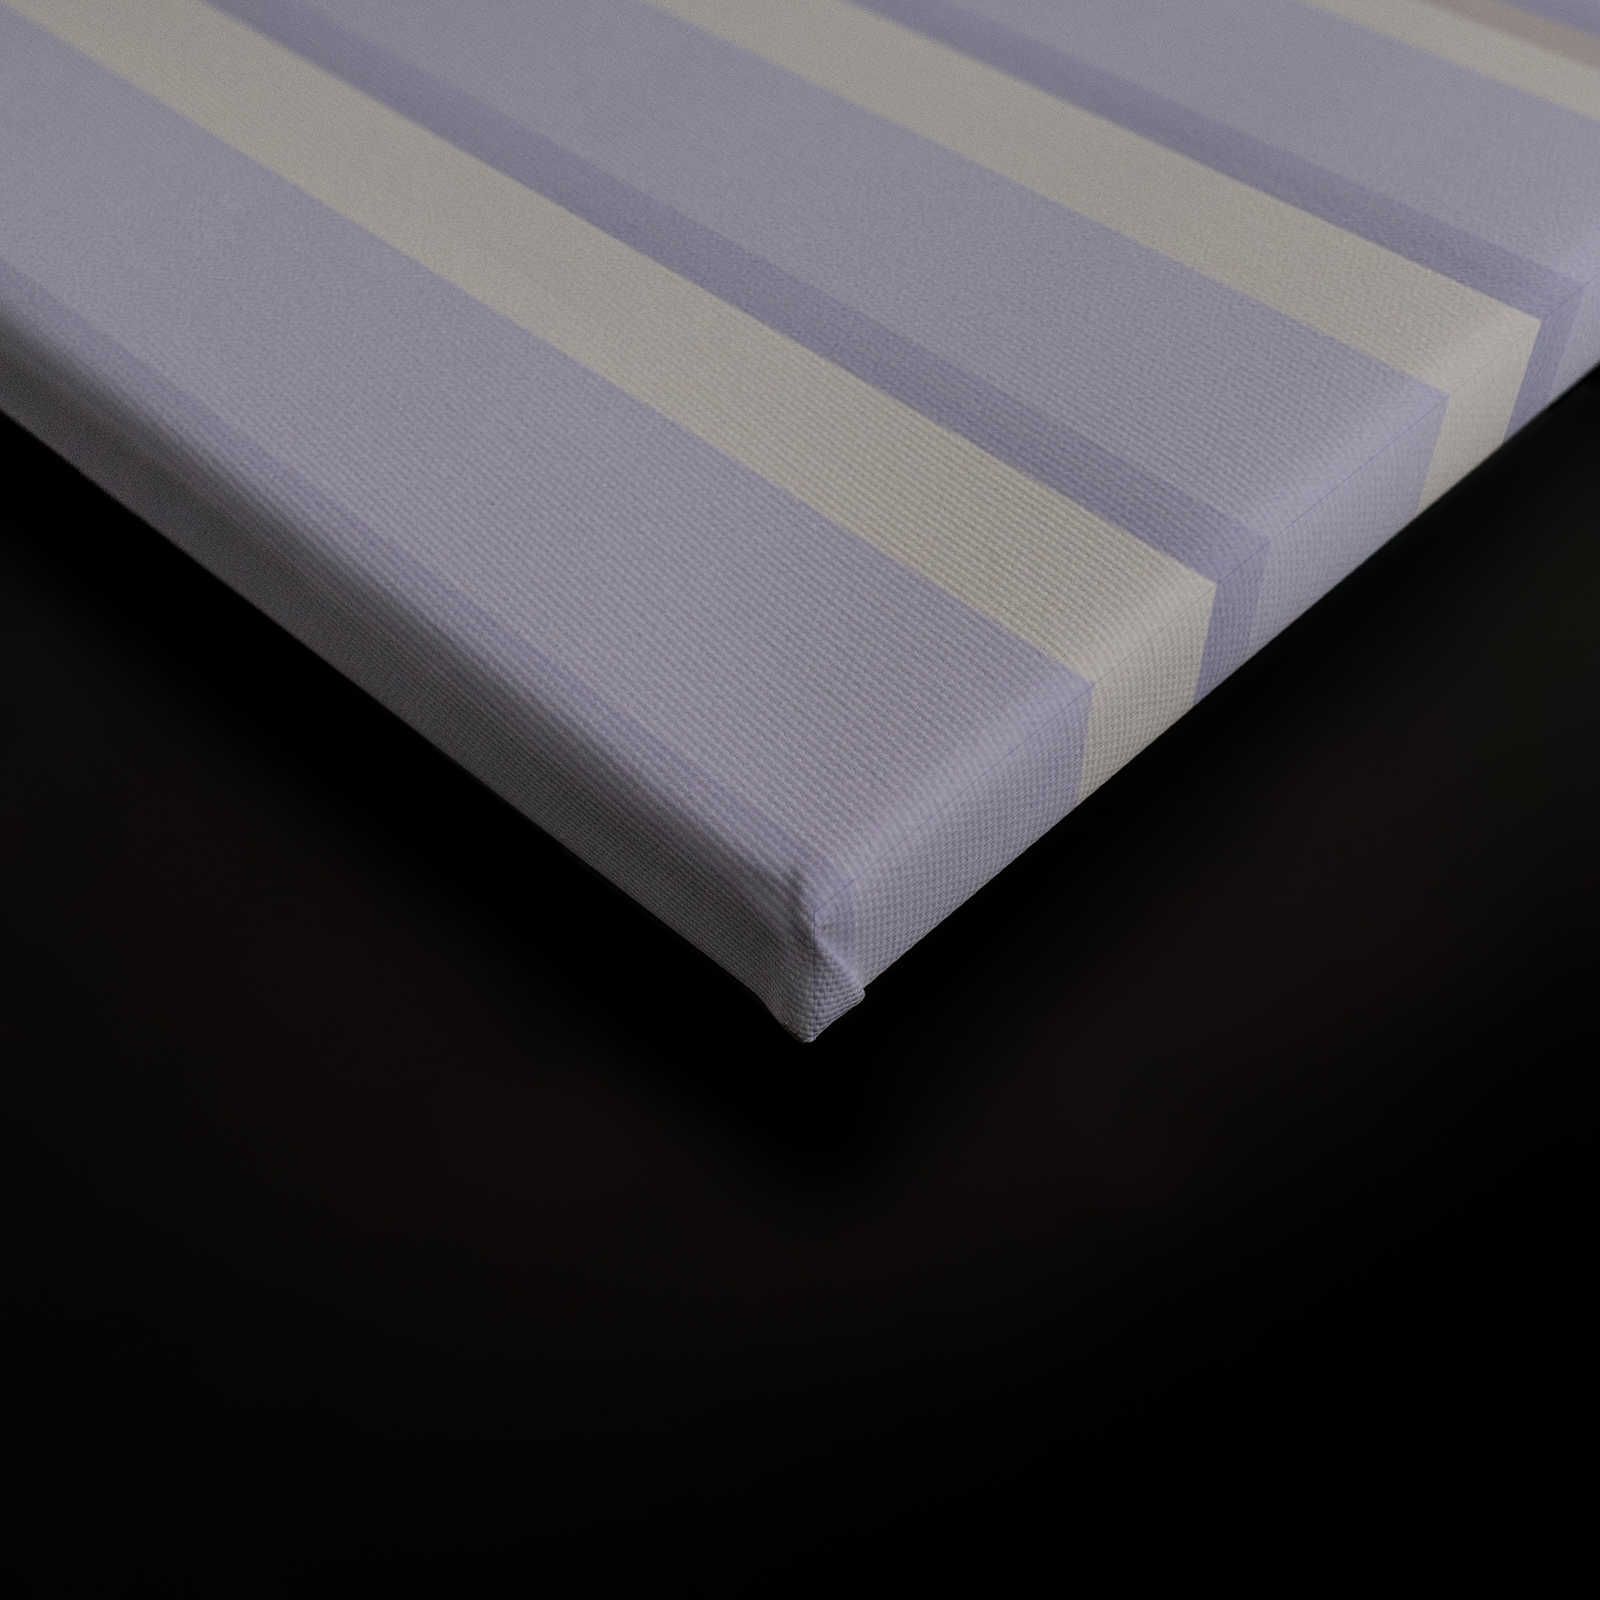             Illusion Room 1 - Toile 3D rayée lilas et grise - 0,90 m x 0,60 m
        